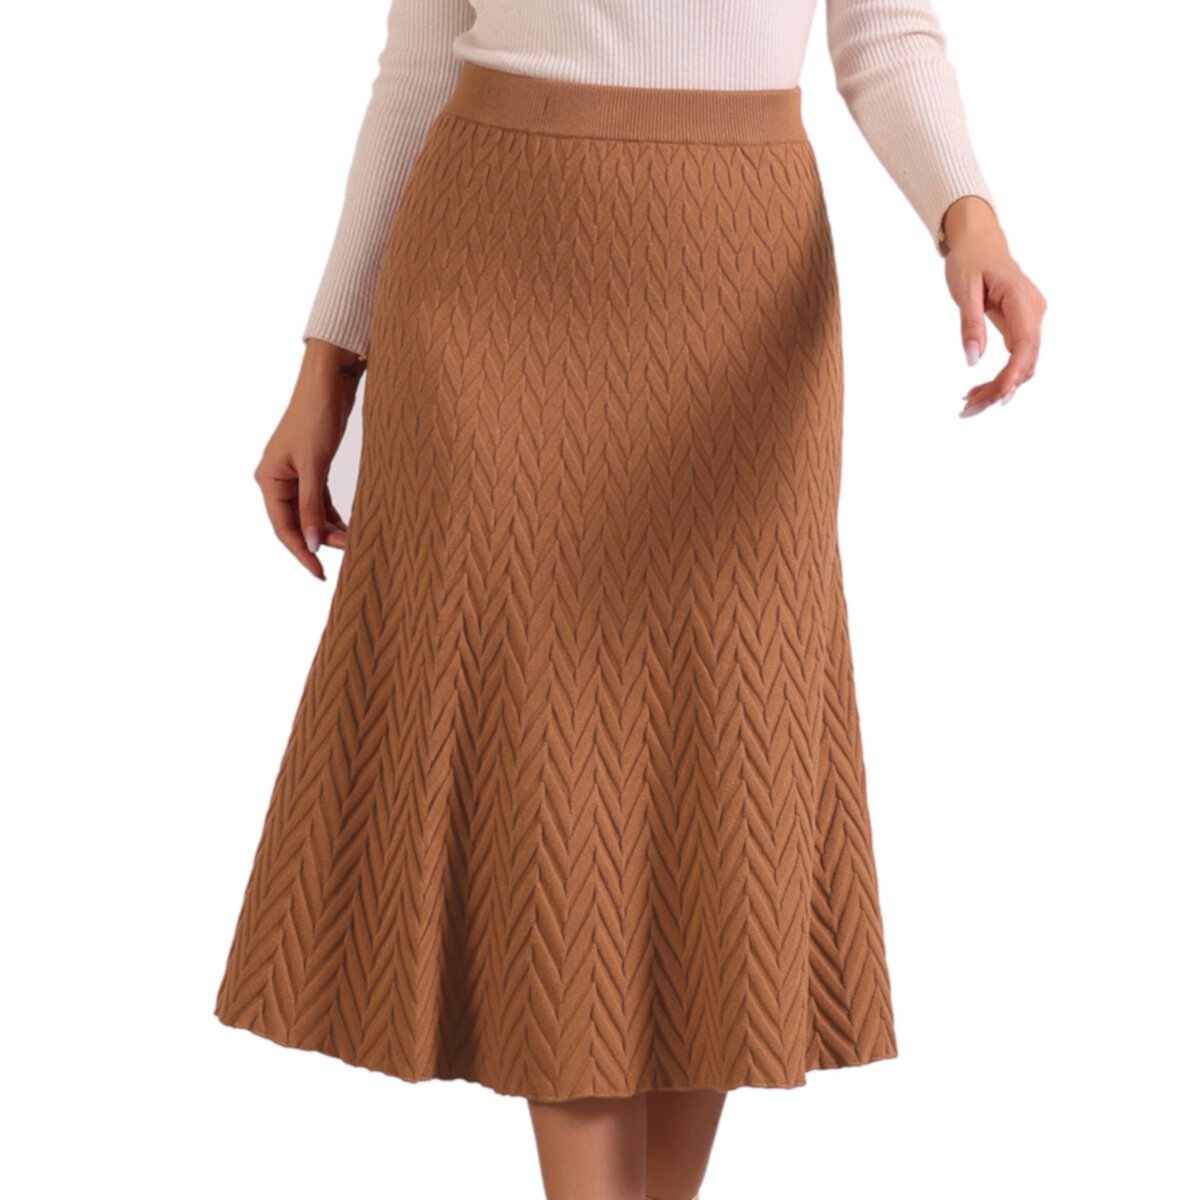 High Waist Skirt For Women's Autumn A-line Stretchy Knit Long Sweater Skirts ALLEGRA K